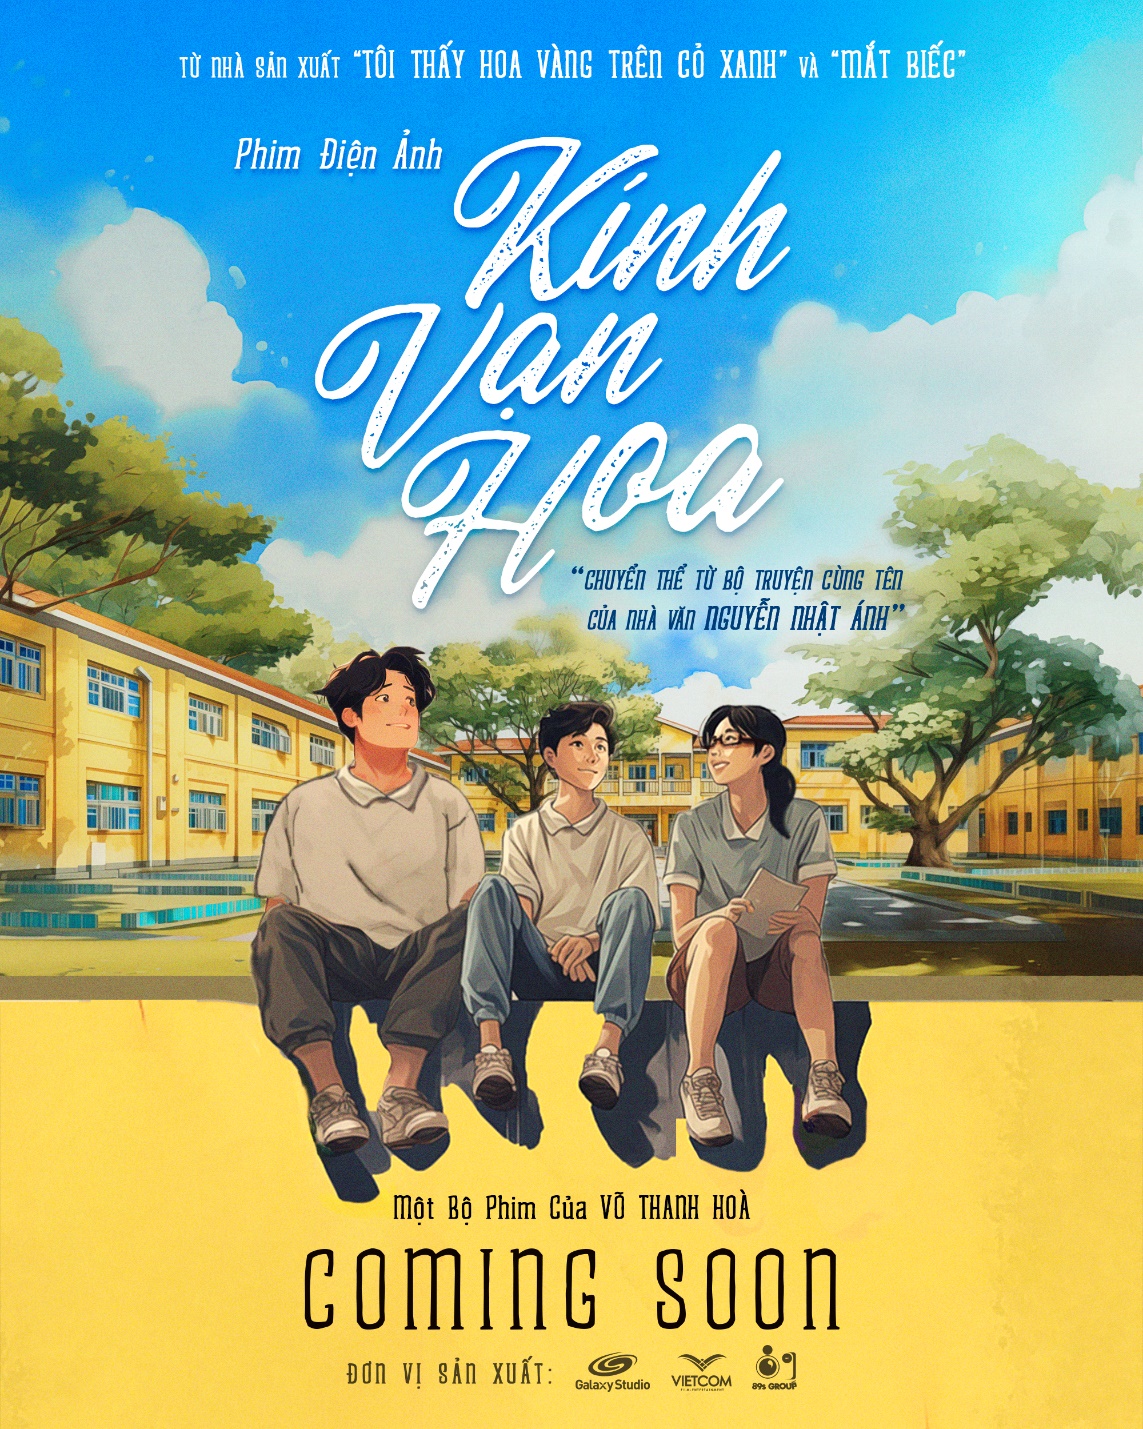 Bộ truyện Kính vạn hoa của nhà văn Nguyễn Nhật Ánh được chuyển thể thành phim điện ảnh - Ảnh 1.